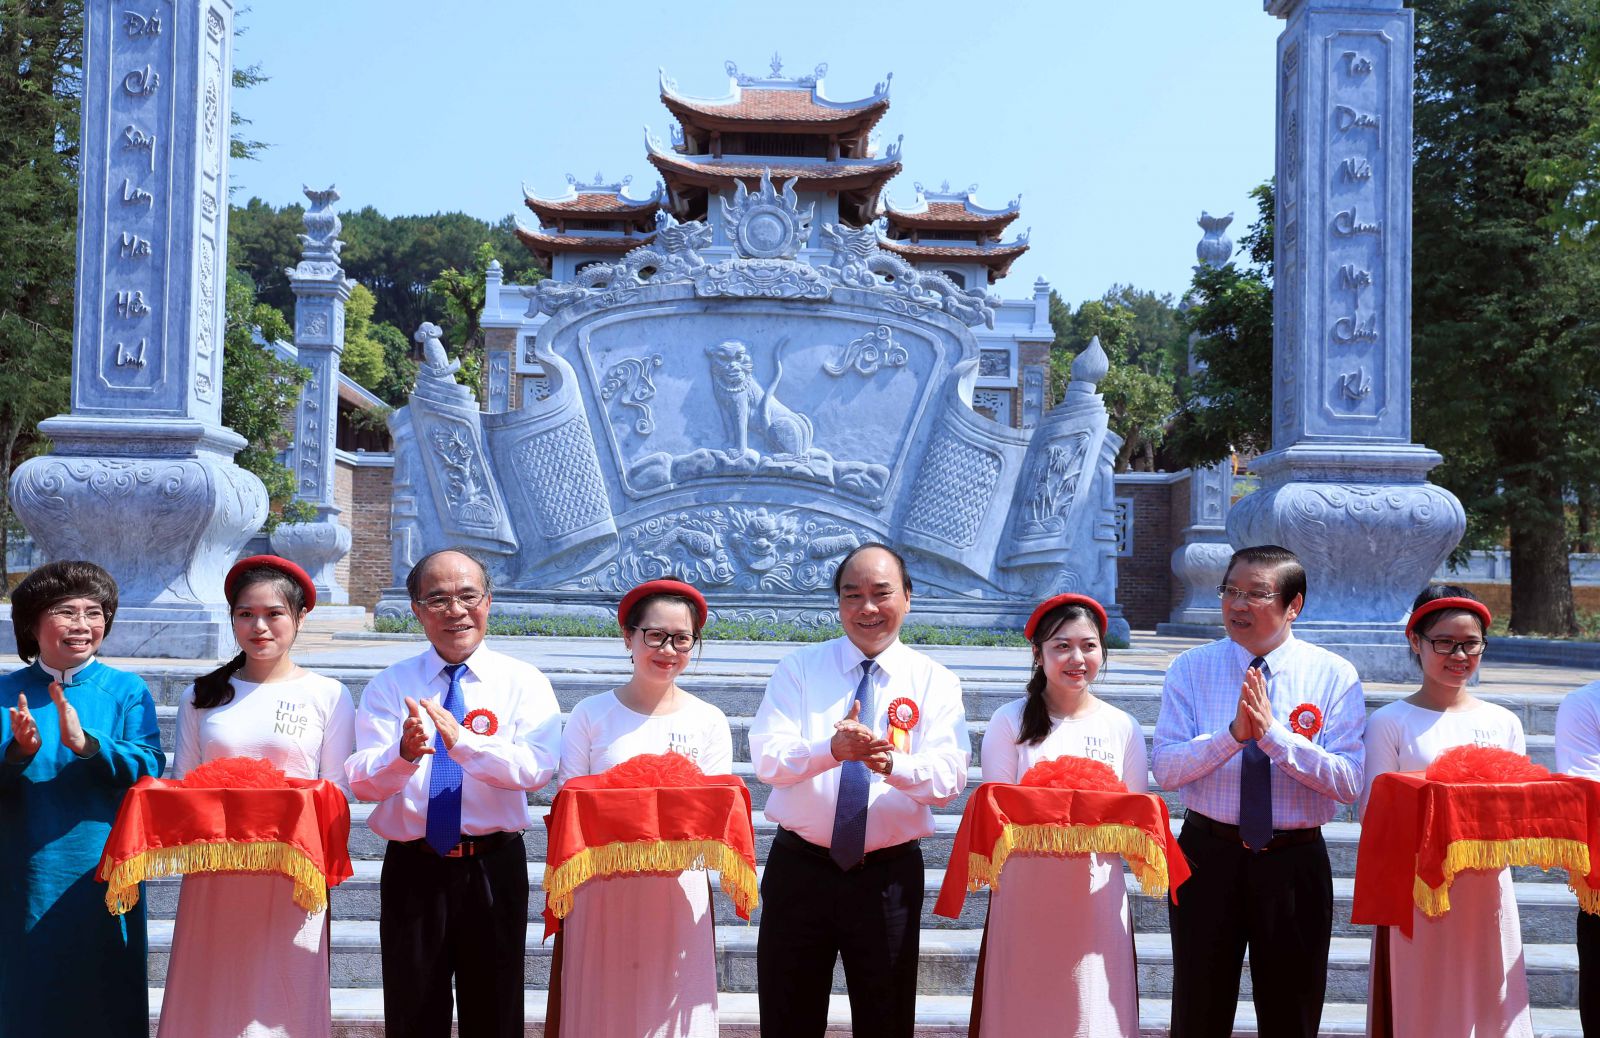 Thủ tướng Nguyễn Xuân Phúc cùng các đại biểu thực hiện nghi thức cắt băng khánh thành Đền Chung Sơn - Đền thờ Gia tiên Chủ tịch Hồ Chí Minh. Ảnh: VGP